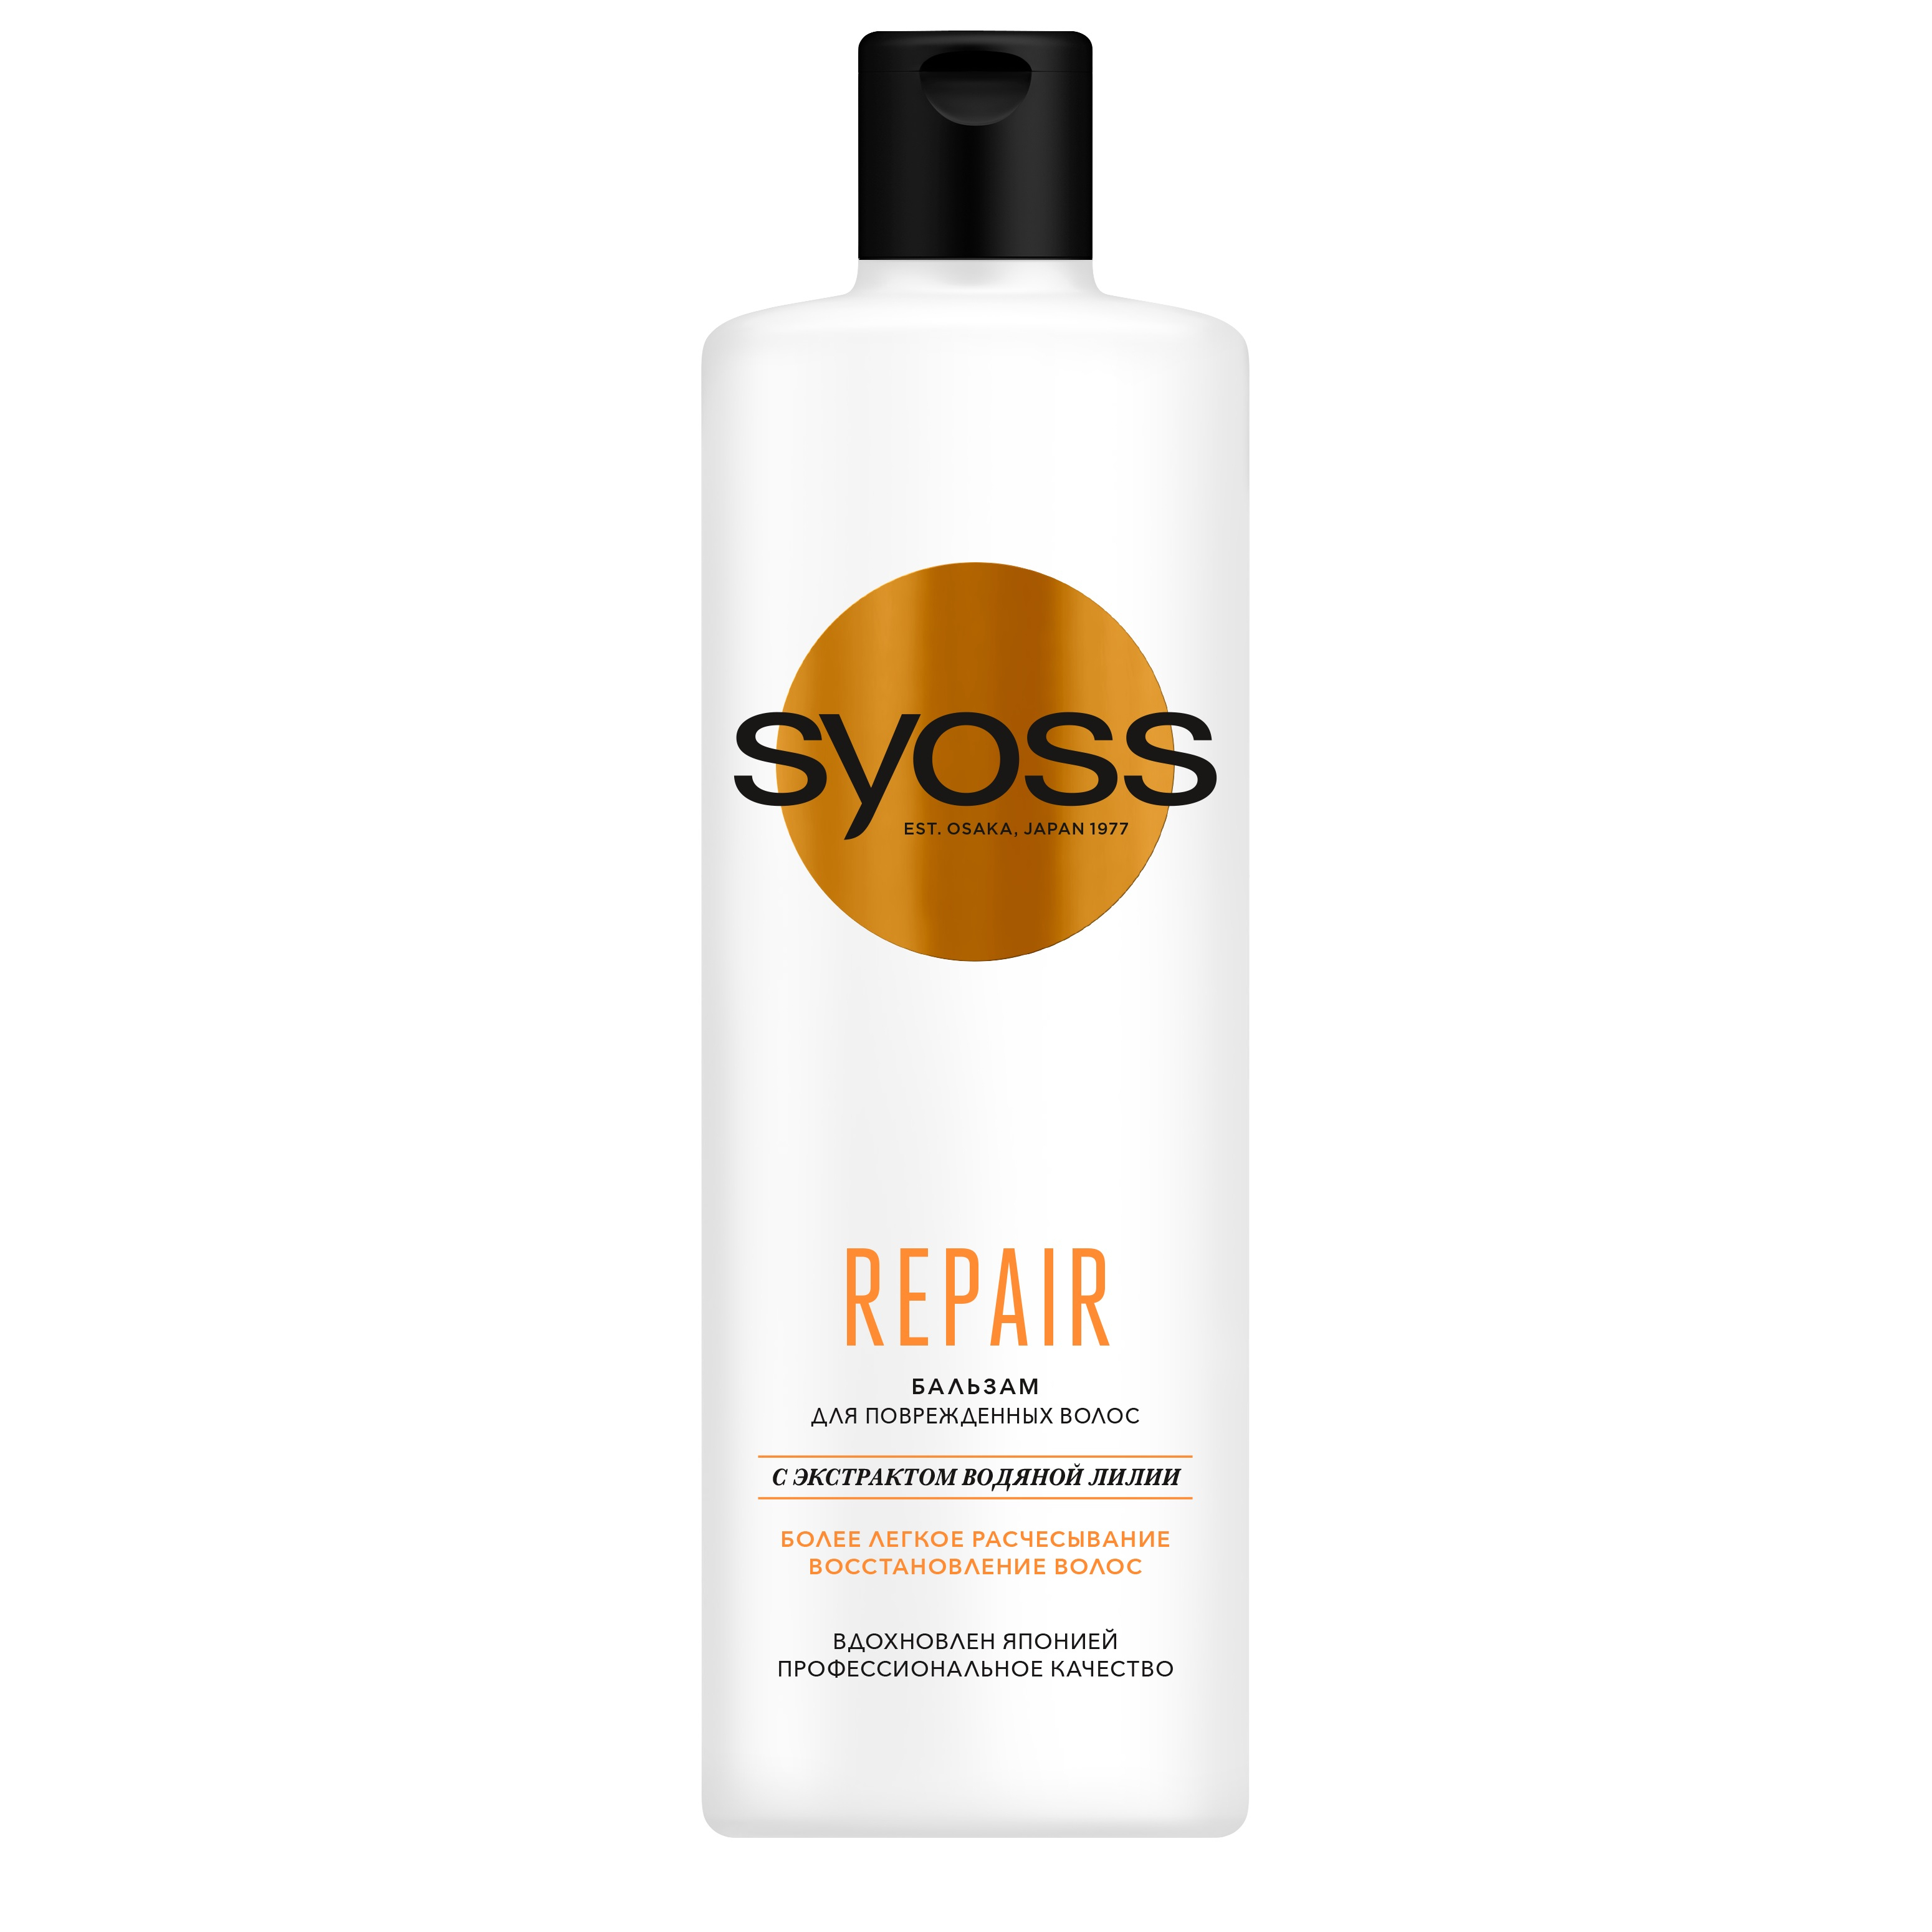 Бальзам для волос Syoss Repair восстанавливающий 450 мл lux color бальзам оттеночный для волос тон 21 светло русый 100 мл